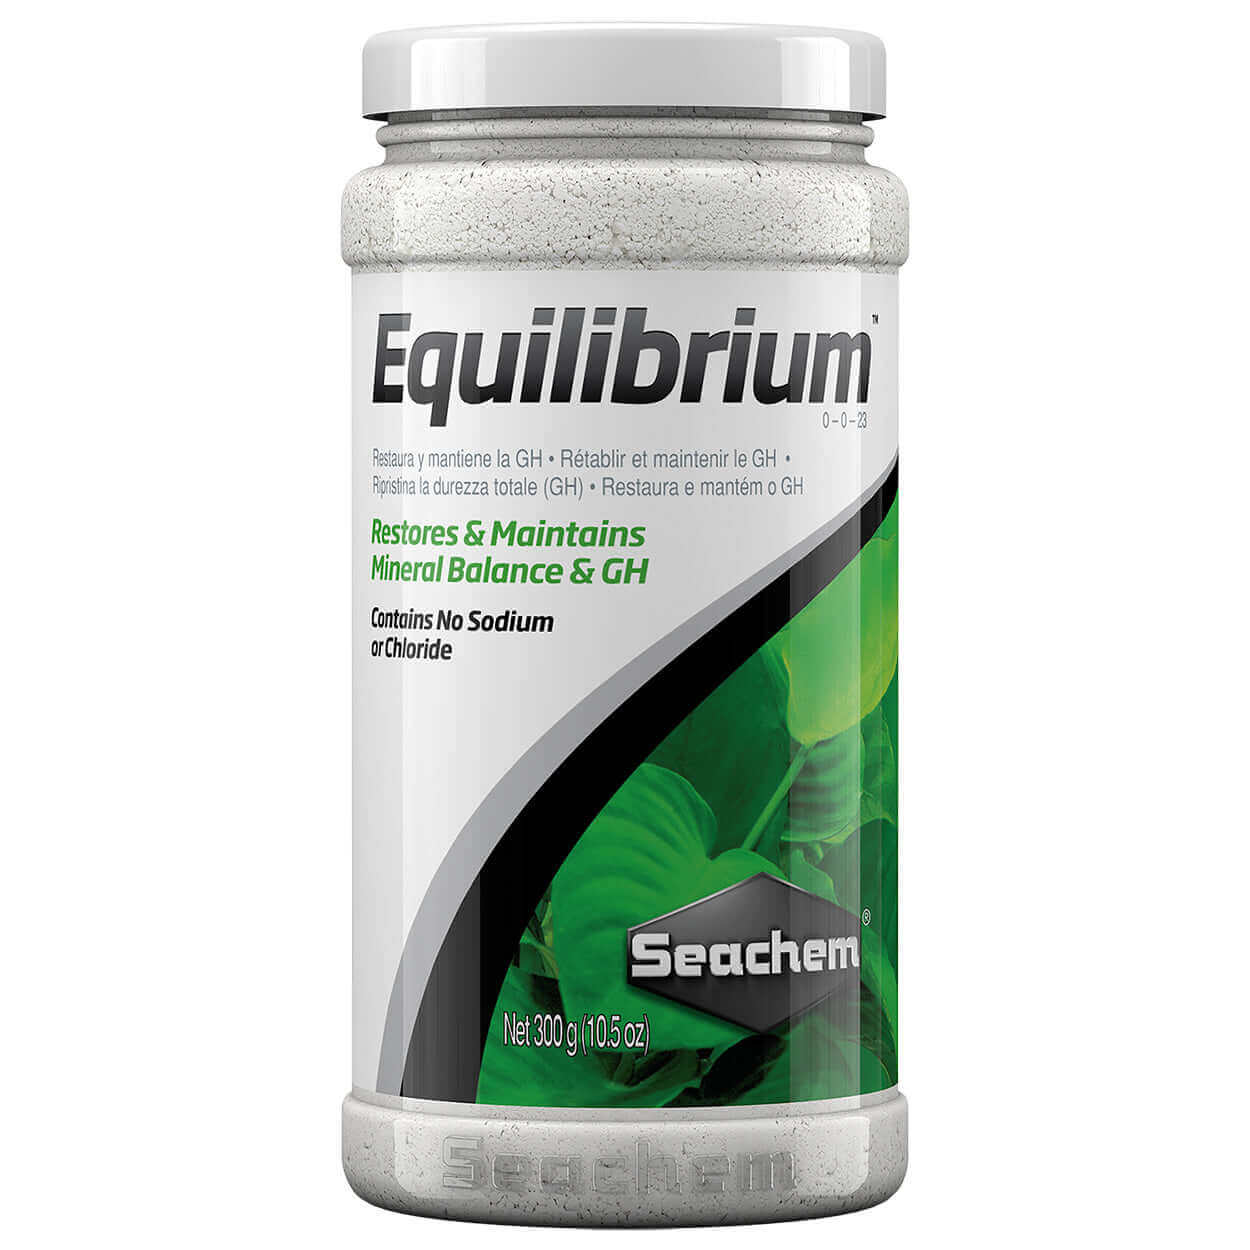 Equilibrium Seachem